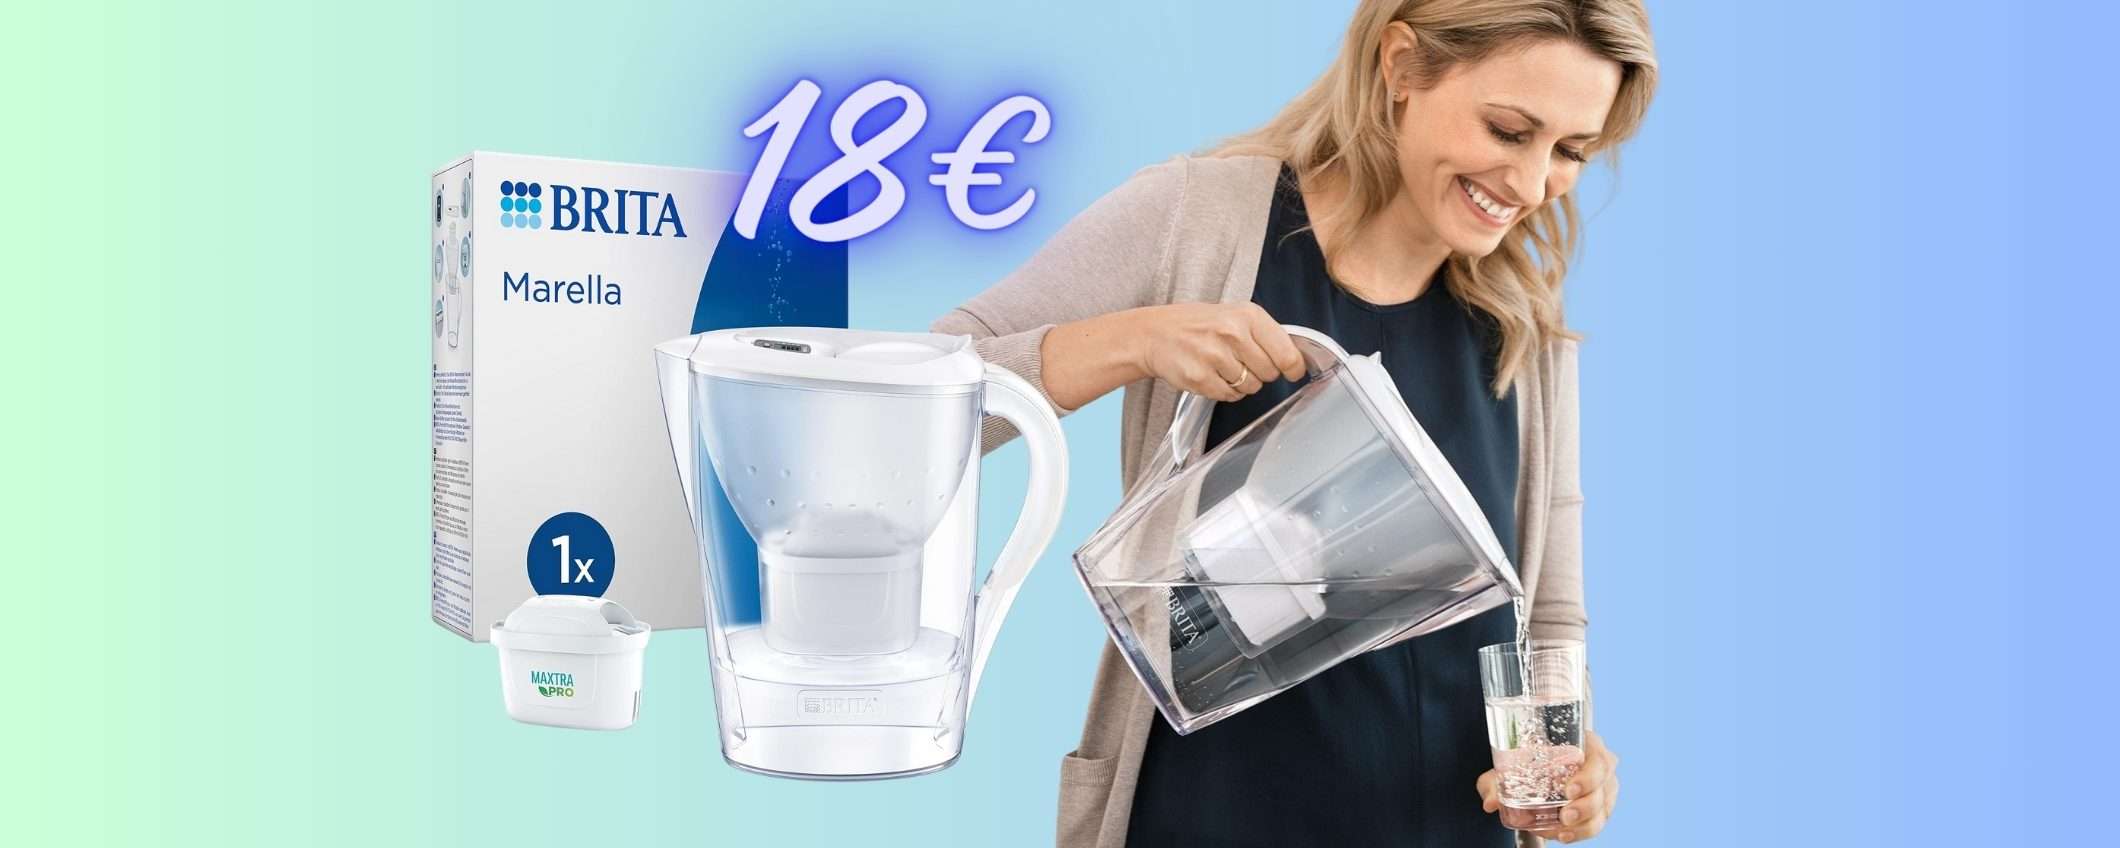 La Caraffa Filtrante Brita per avere l'acqua buona e pulita (18€)